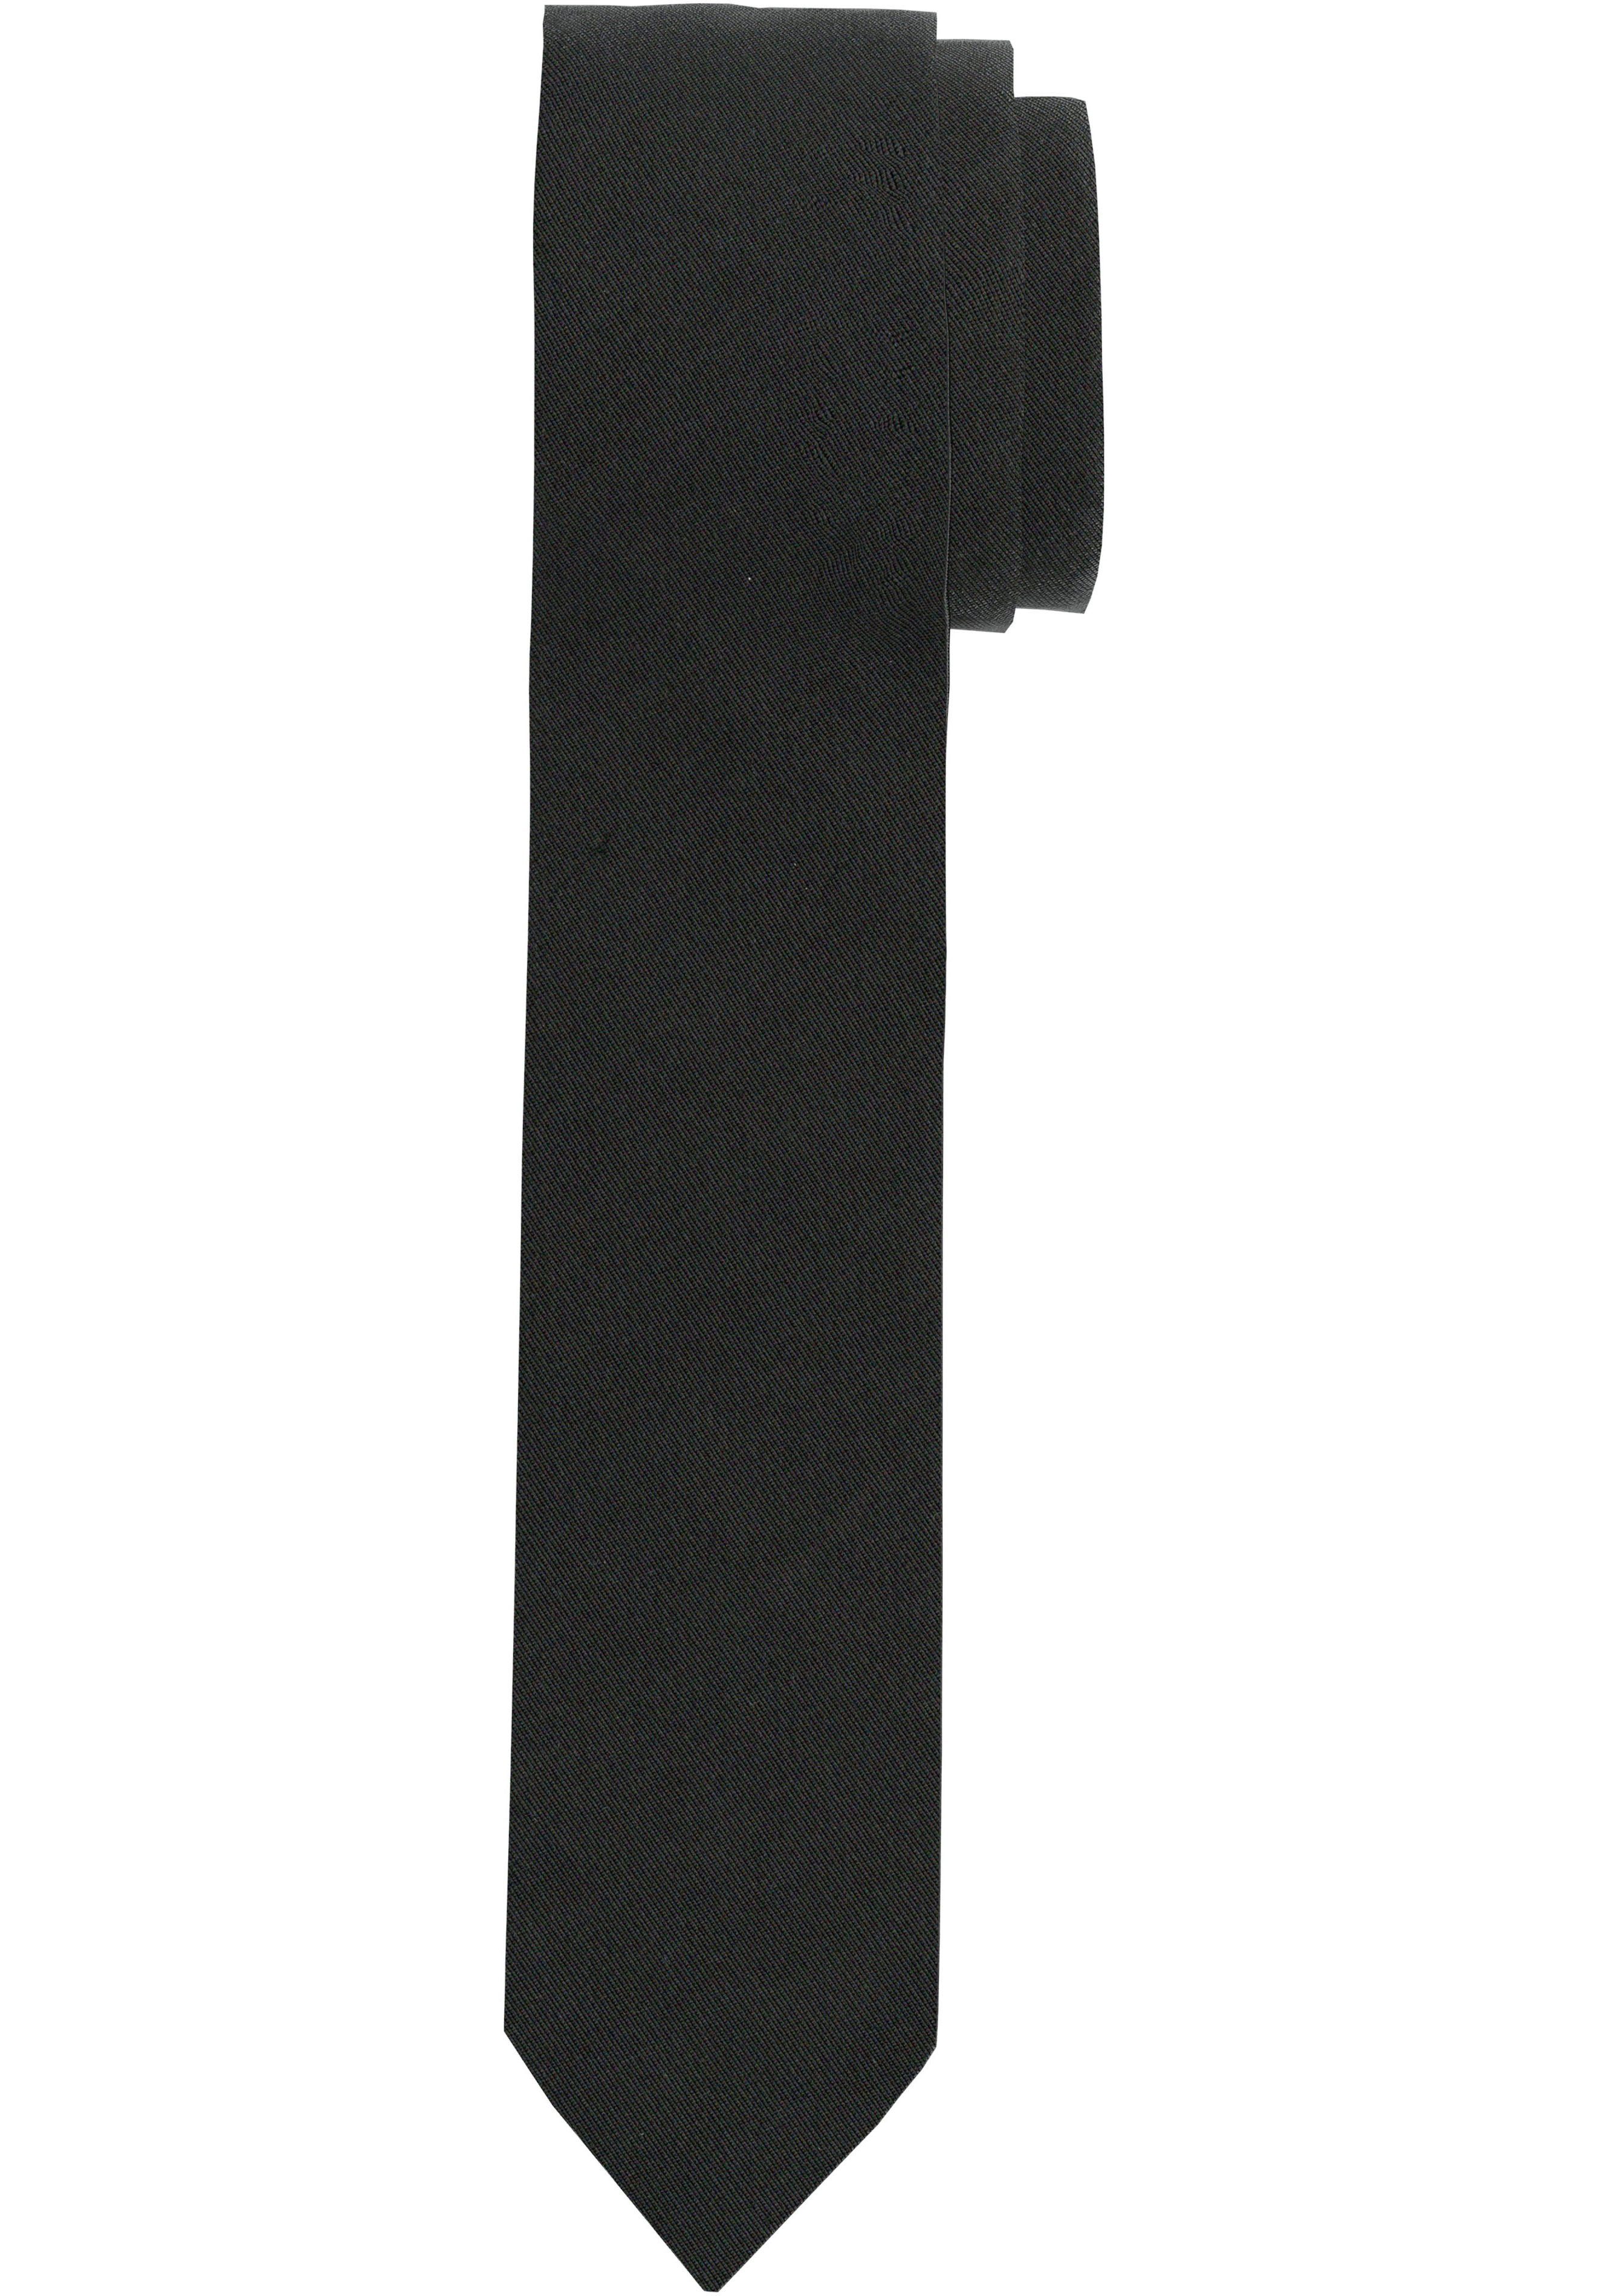 Wir bieten es zu einem tollen Preis an! OLYMP Krawatte Slim Krawatte schwarz